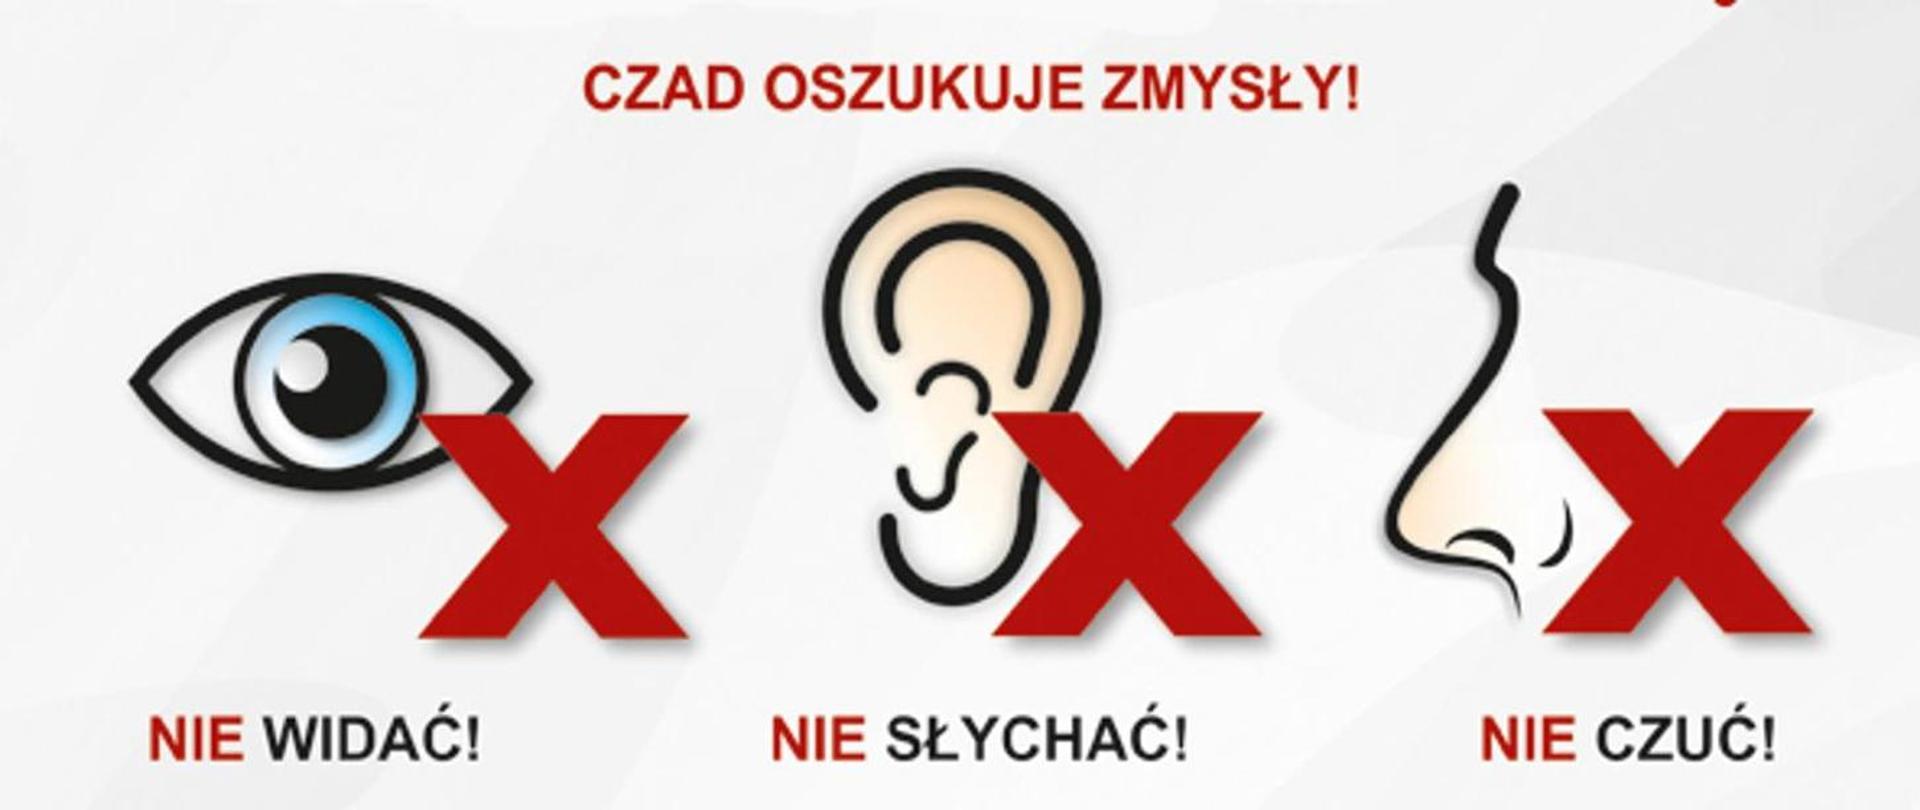 Infografika: znak X na oku, uchu i nosie przedstawiają że czad oszukuje zmysły. Czadu nie widać, nie słychać i nie czuć